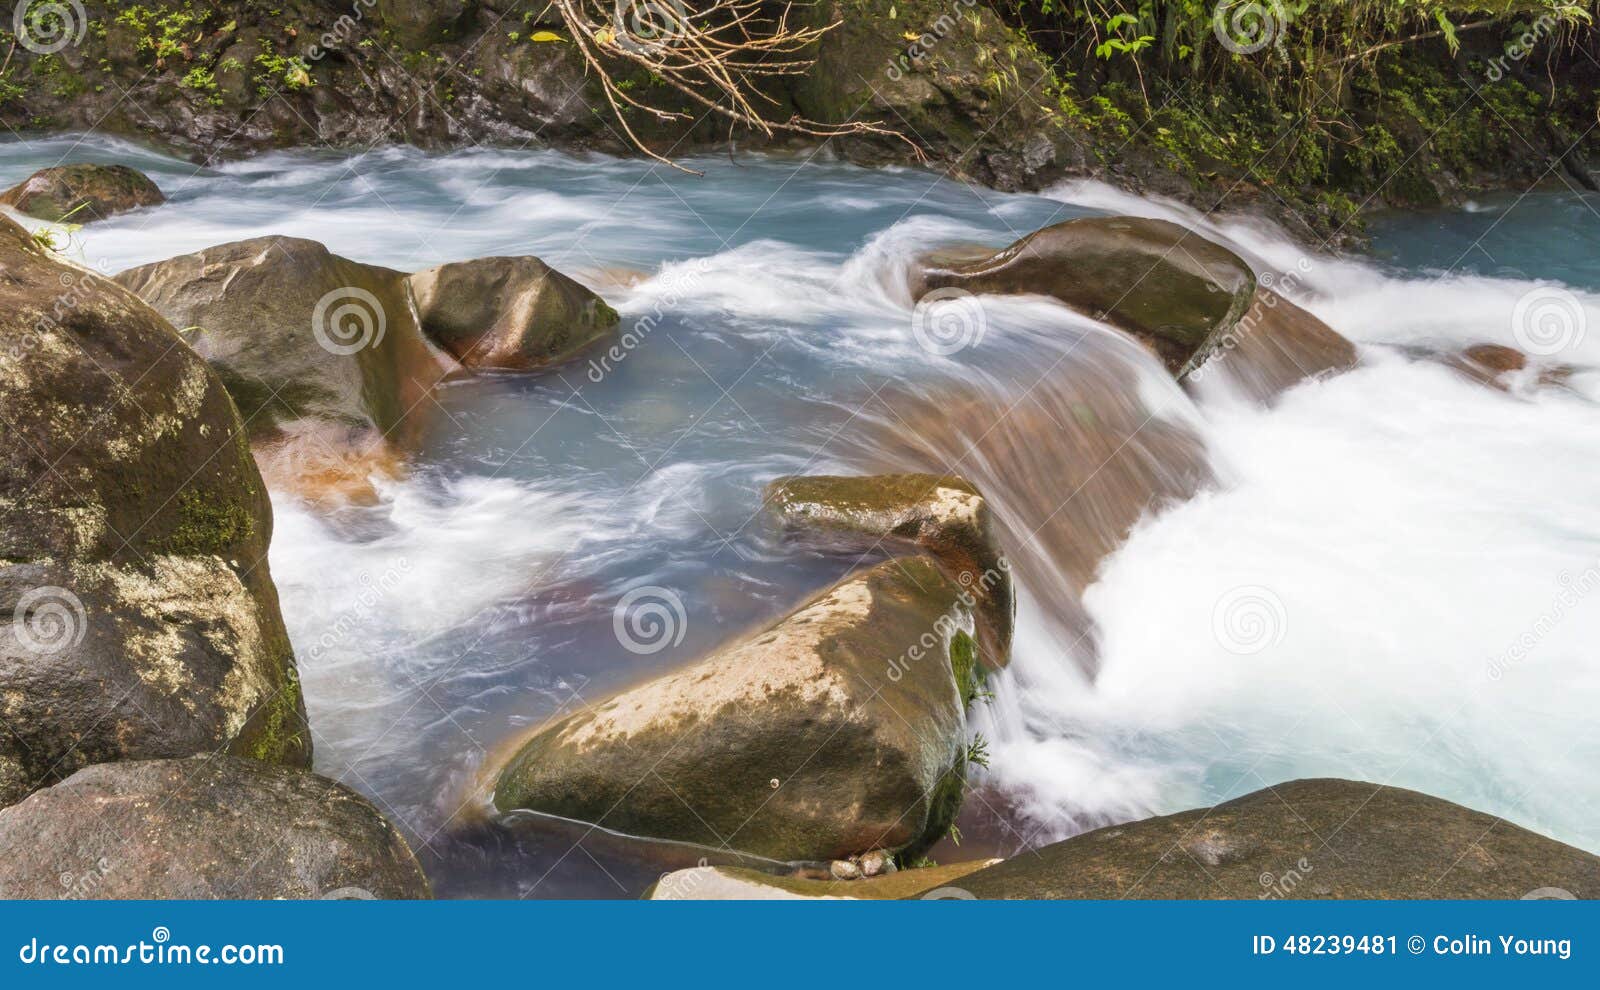 rapids on the rio celeste